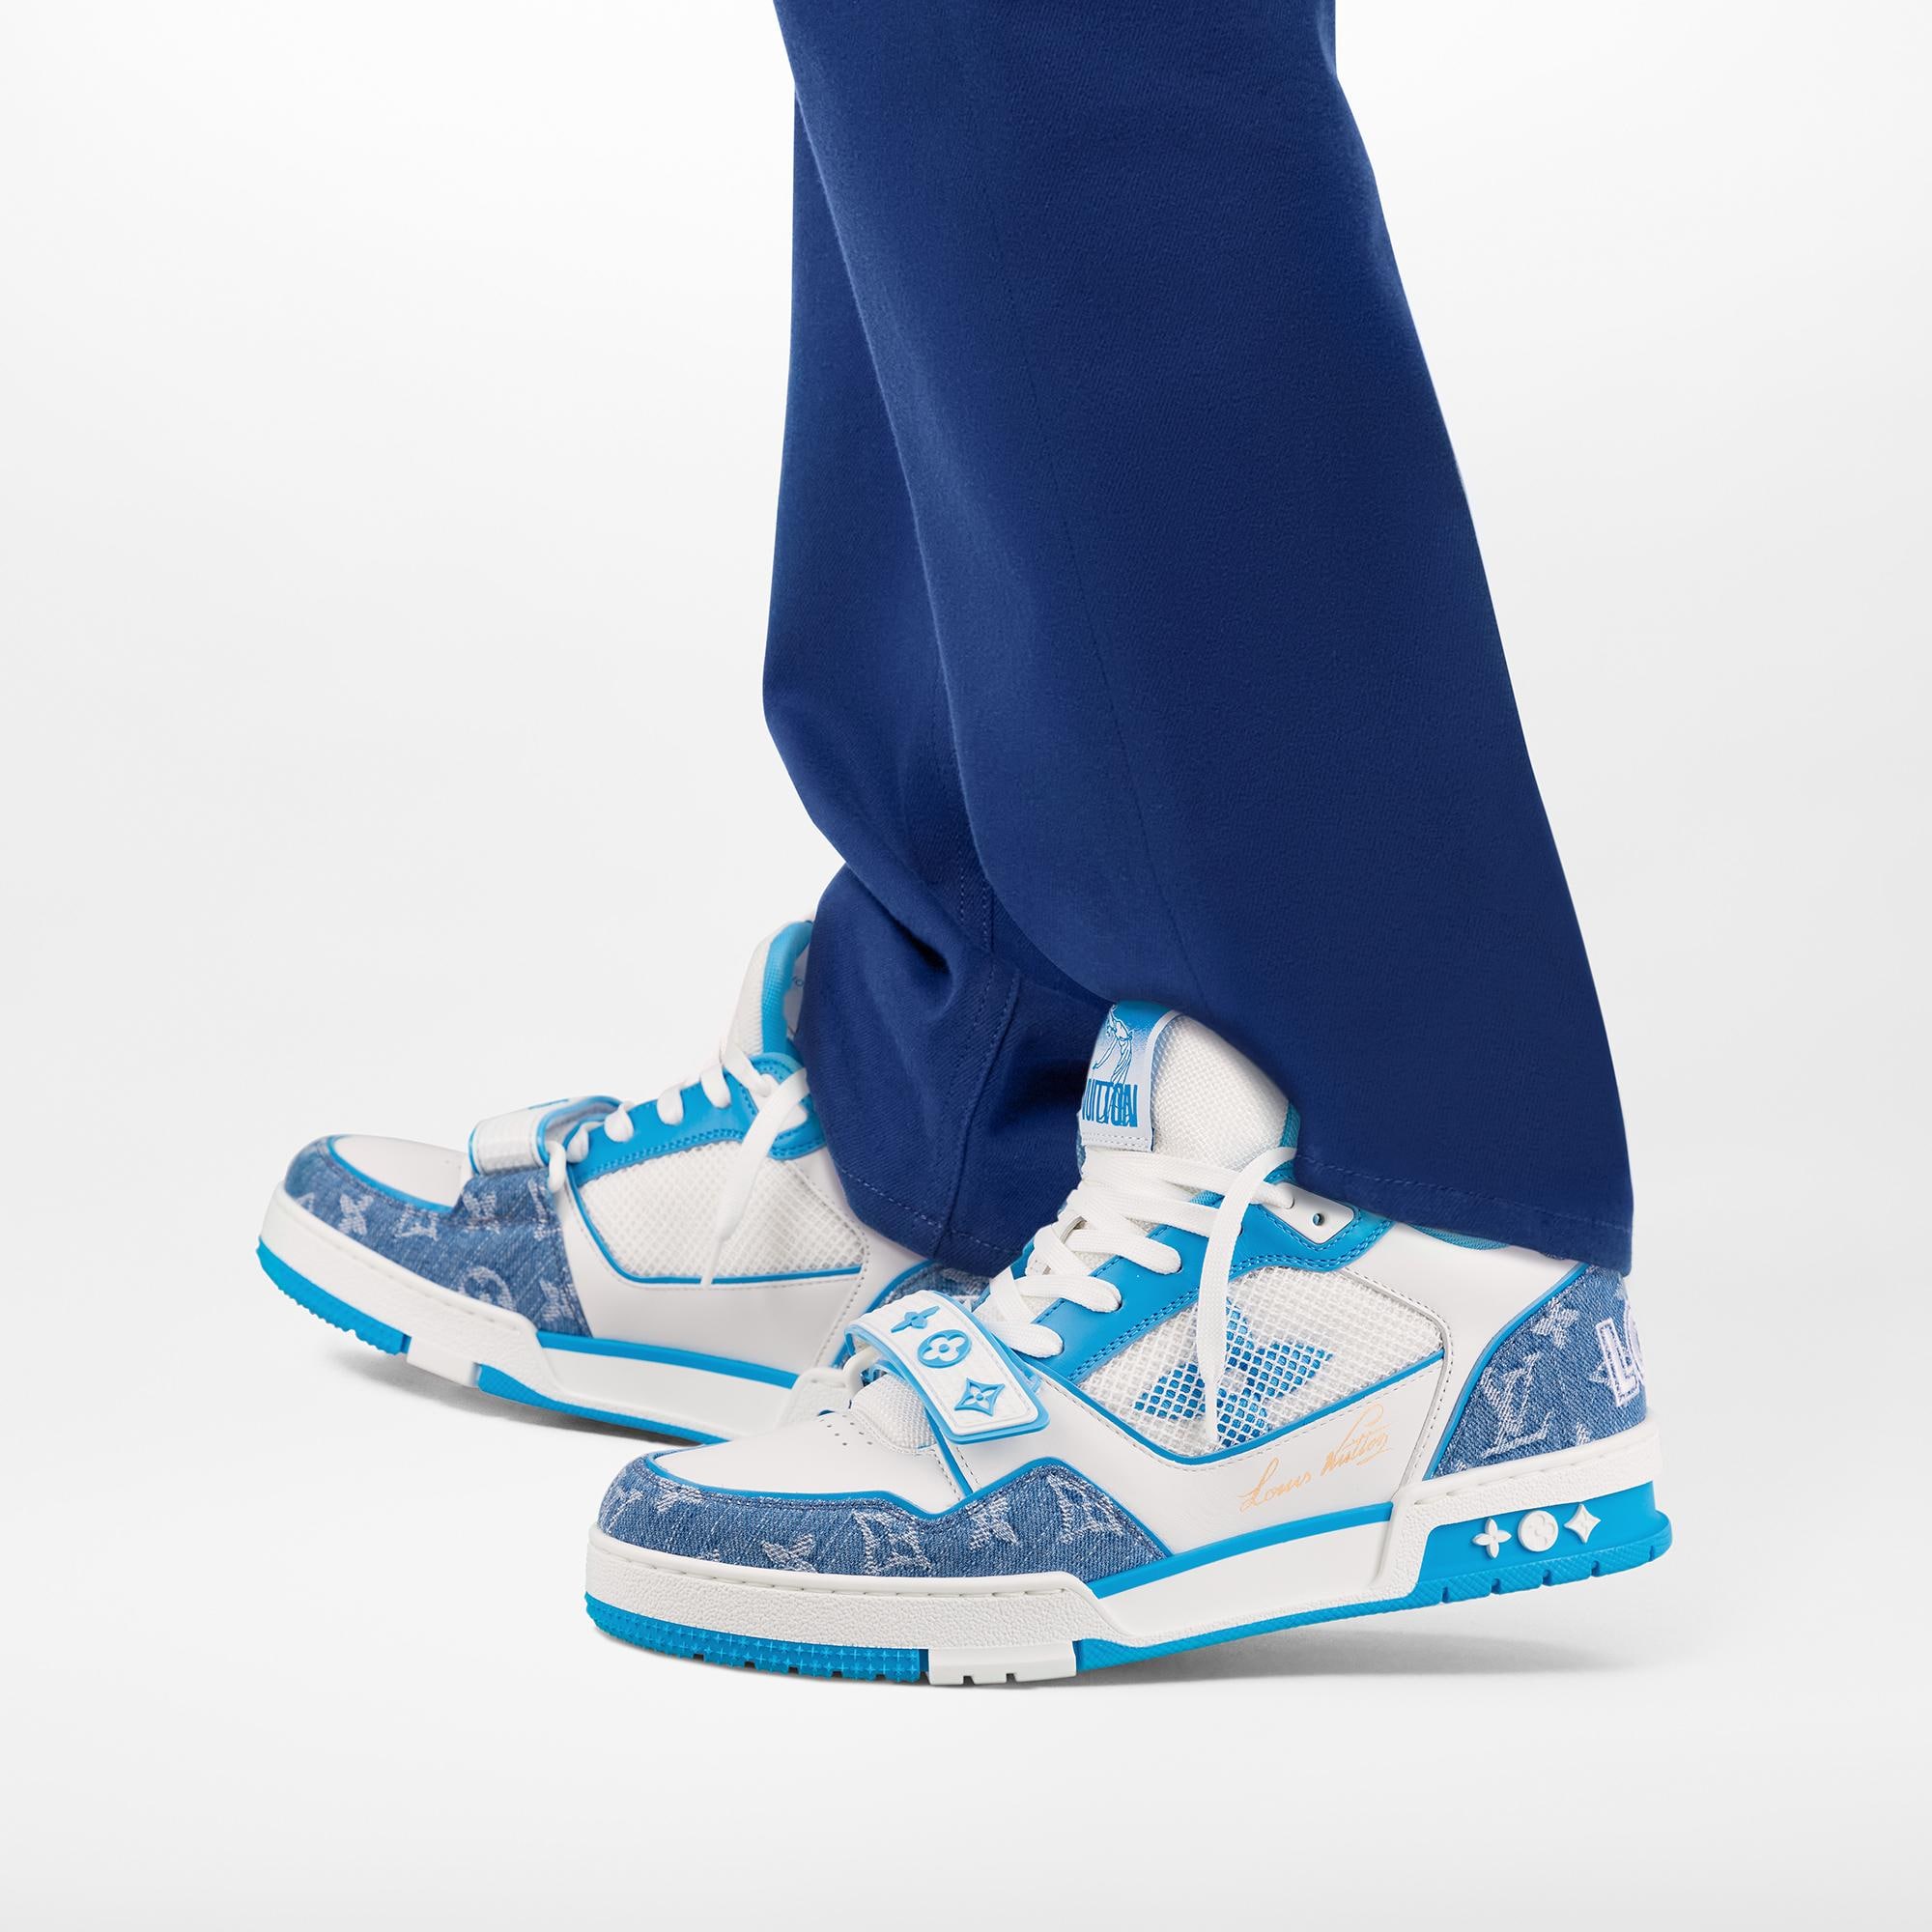 Louis Vuitton Trainer Sneaker White Blue Men's - 1A67KZ - US